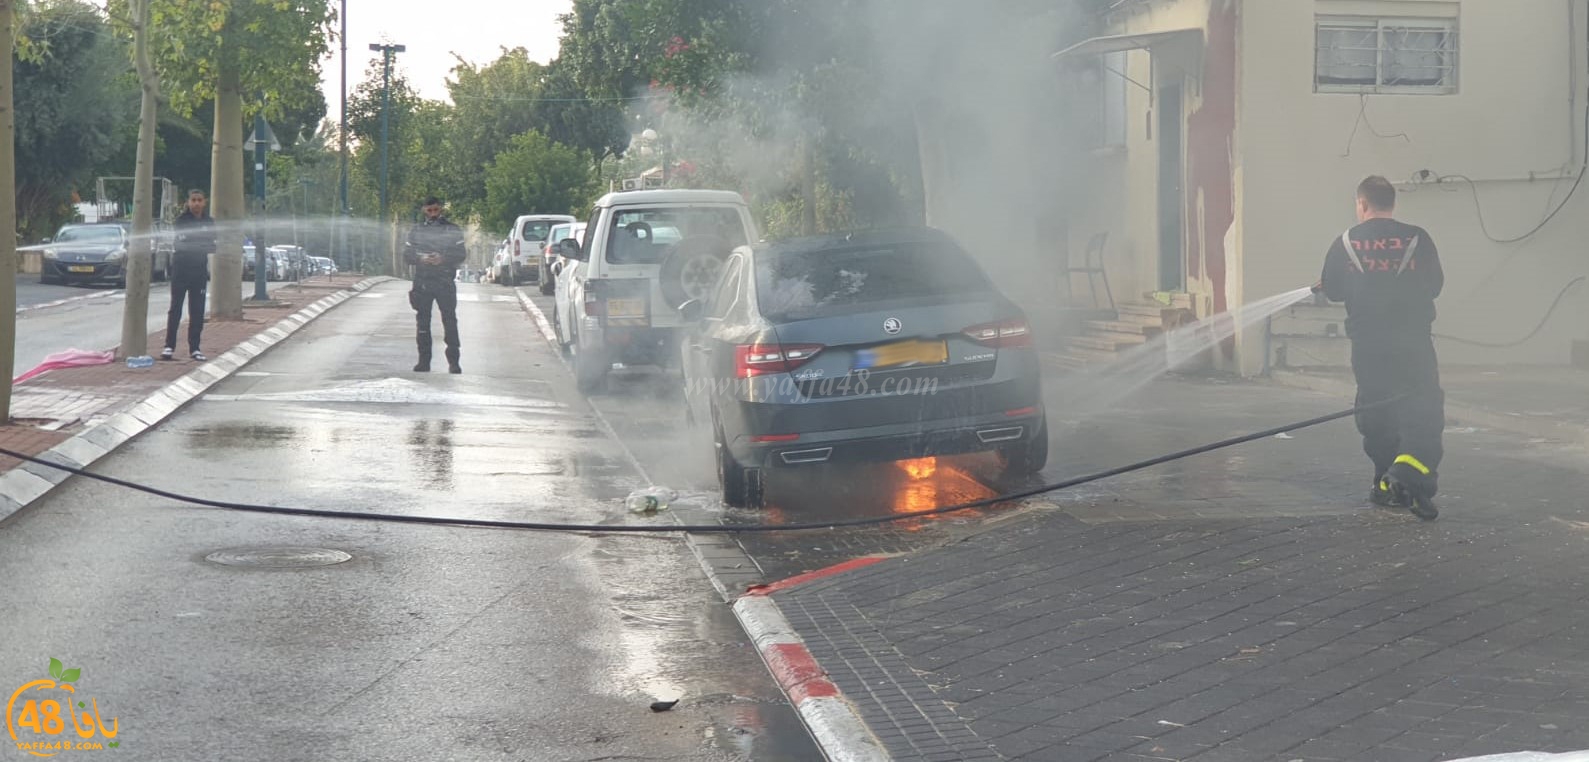  يافا: احتراق سيارة في المدينة والاطفائية تهرع للمكان